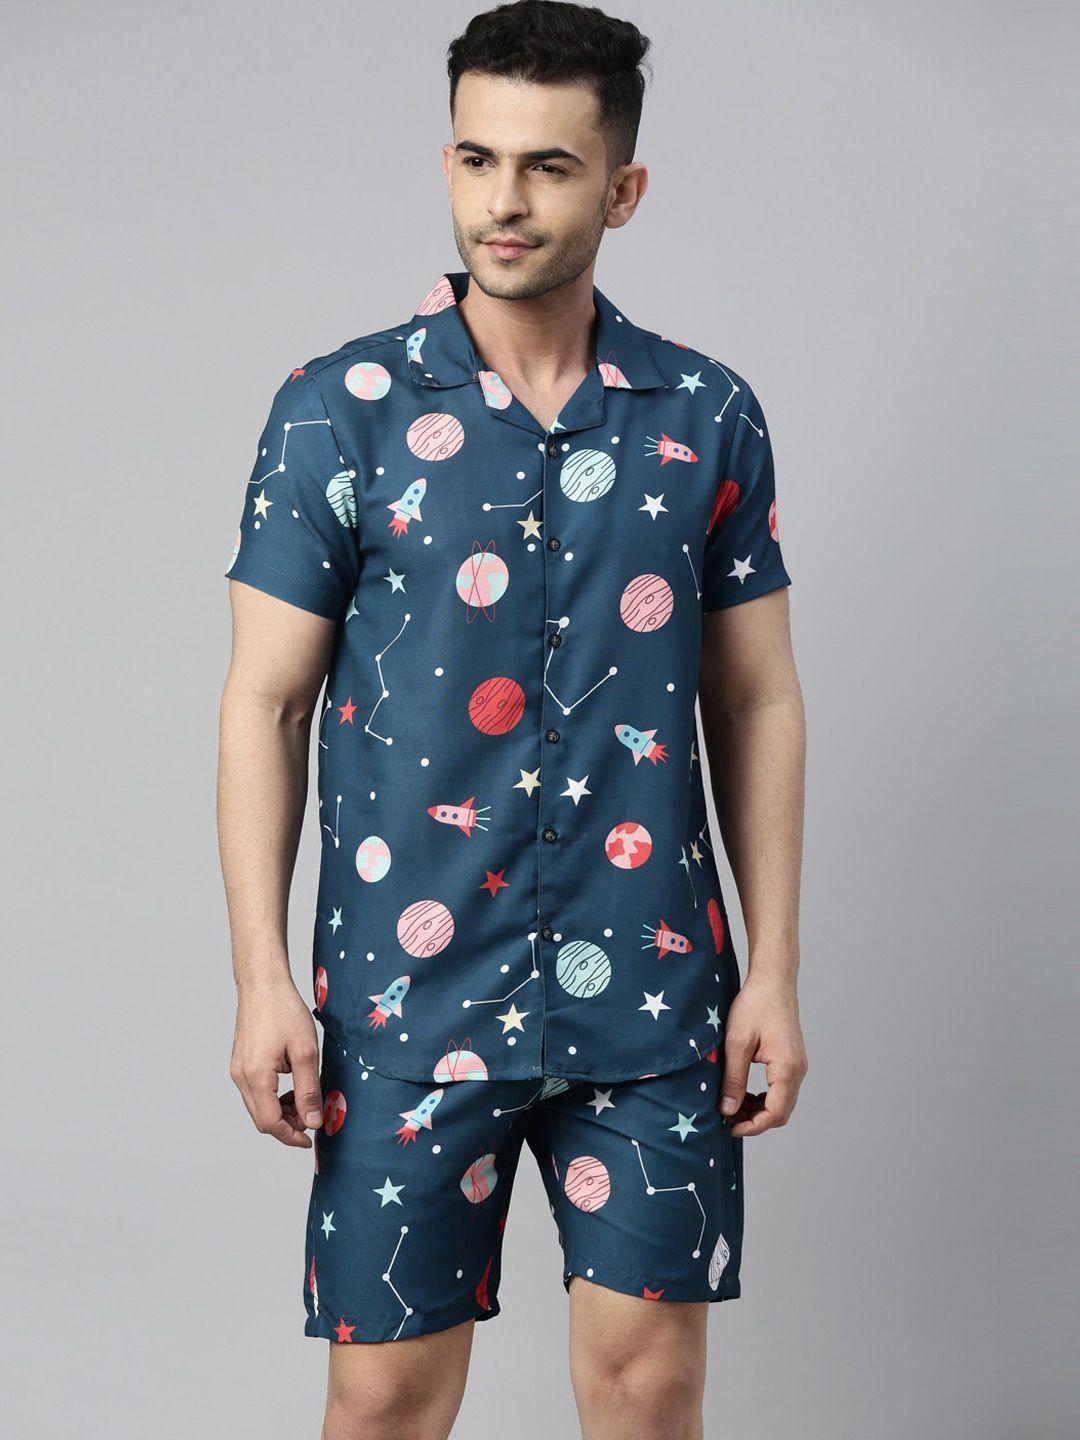 bushirt men teal blue & pink space printed night suit